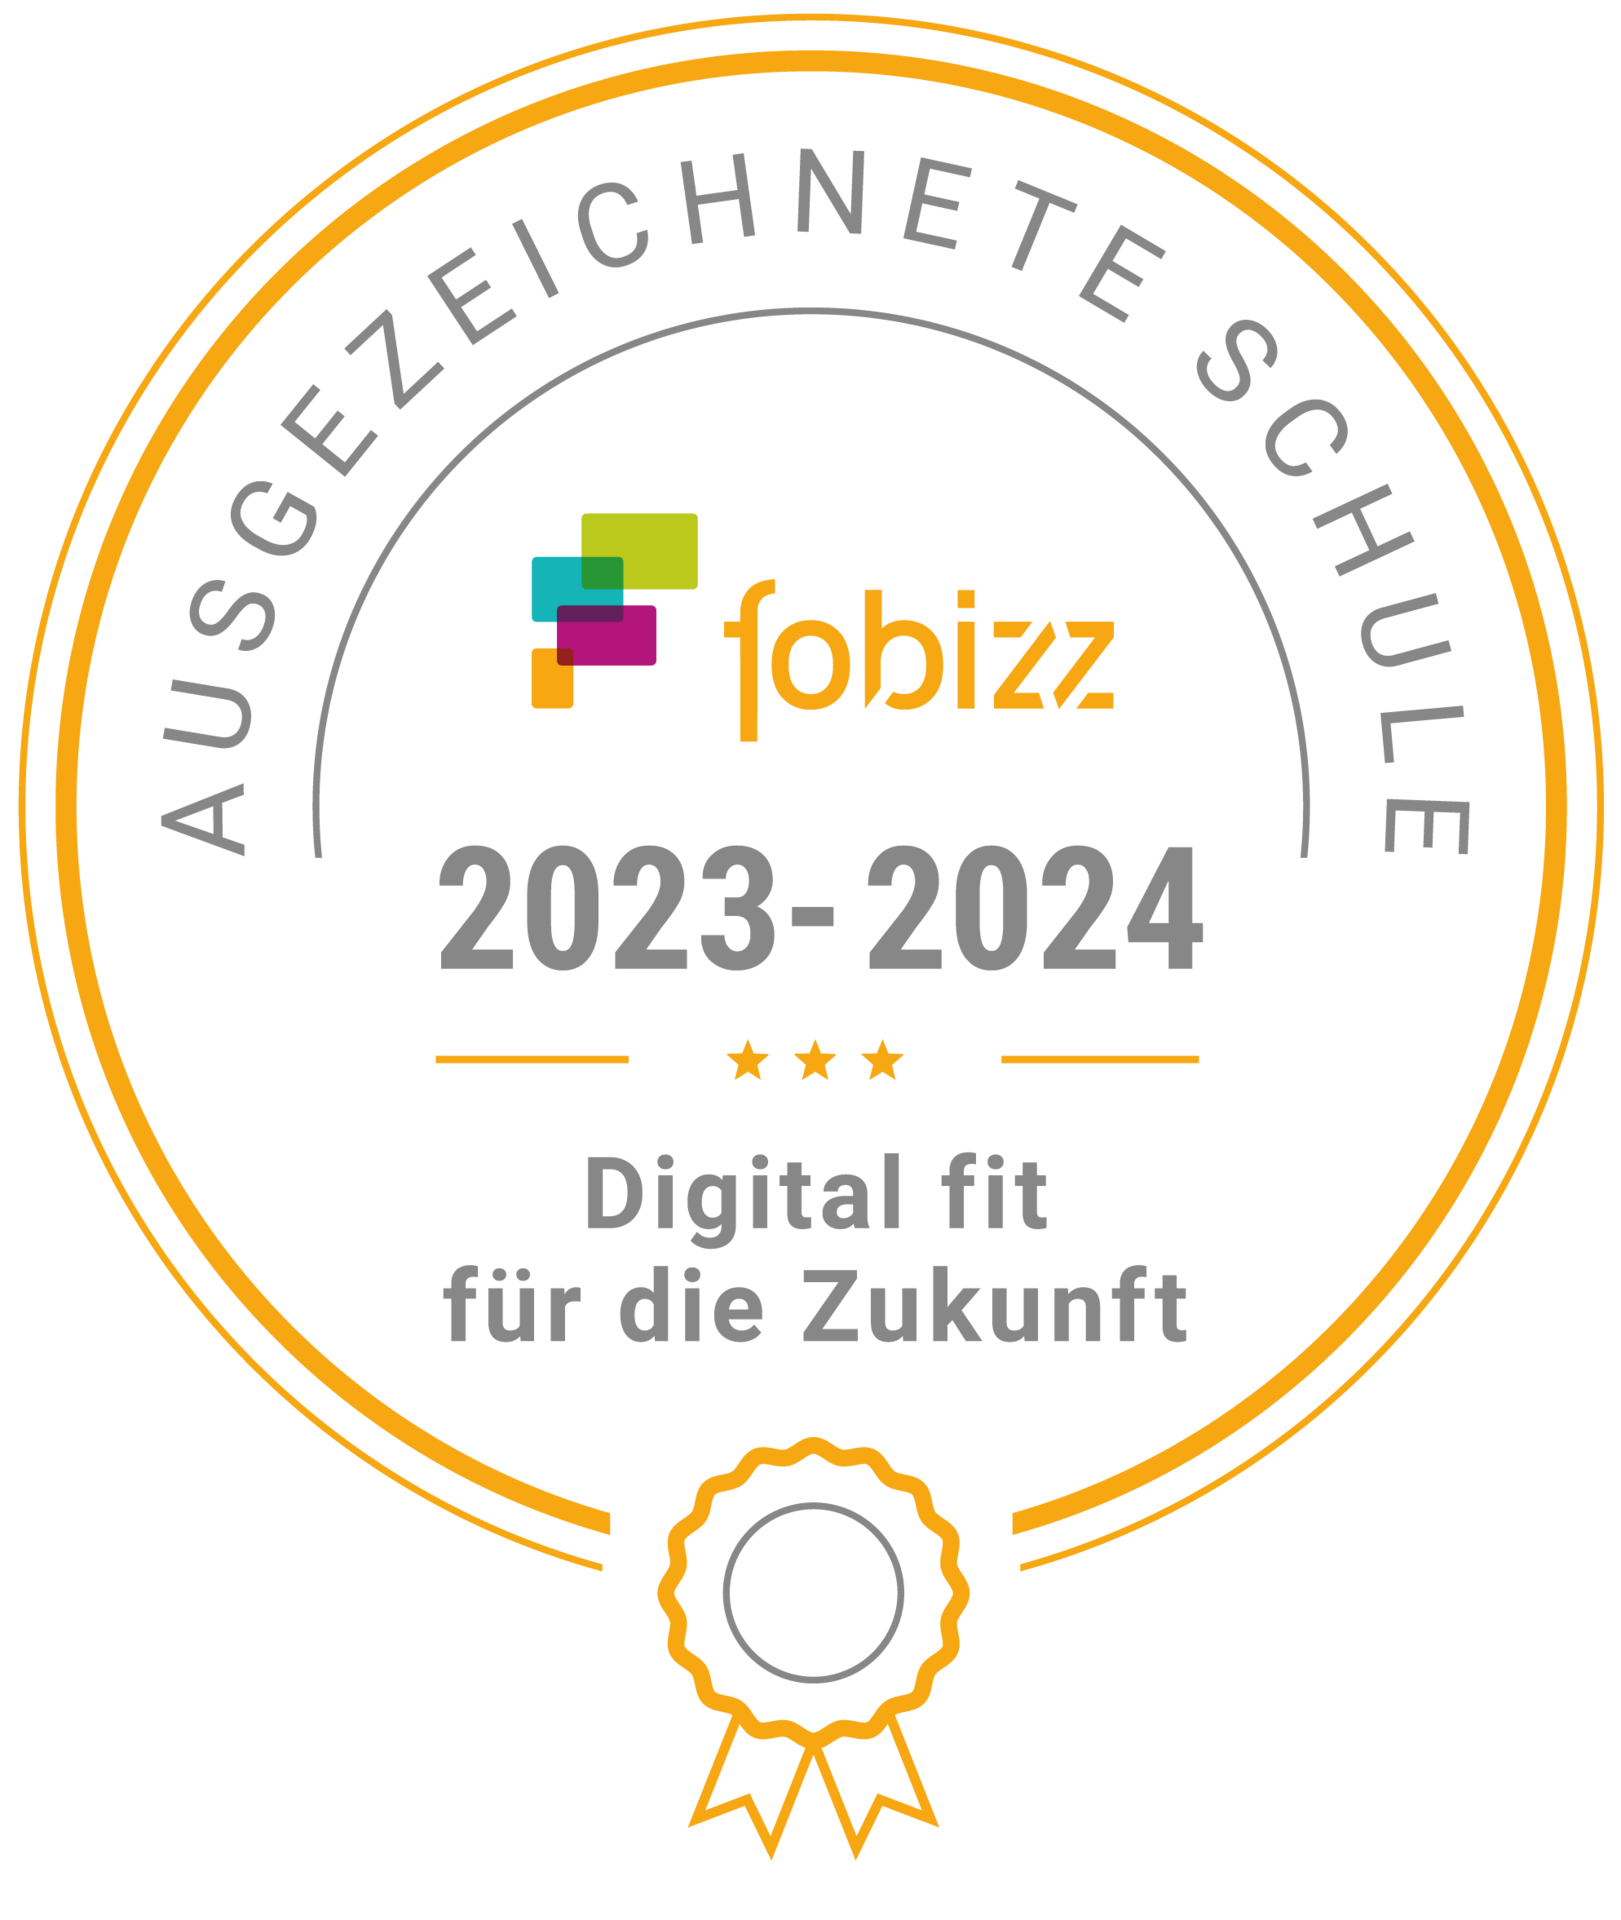 fobizz_logo